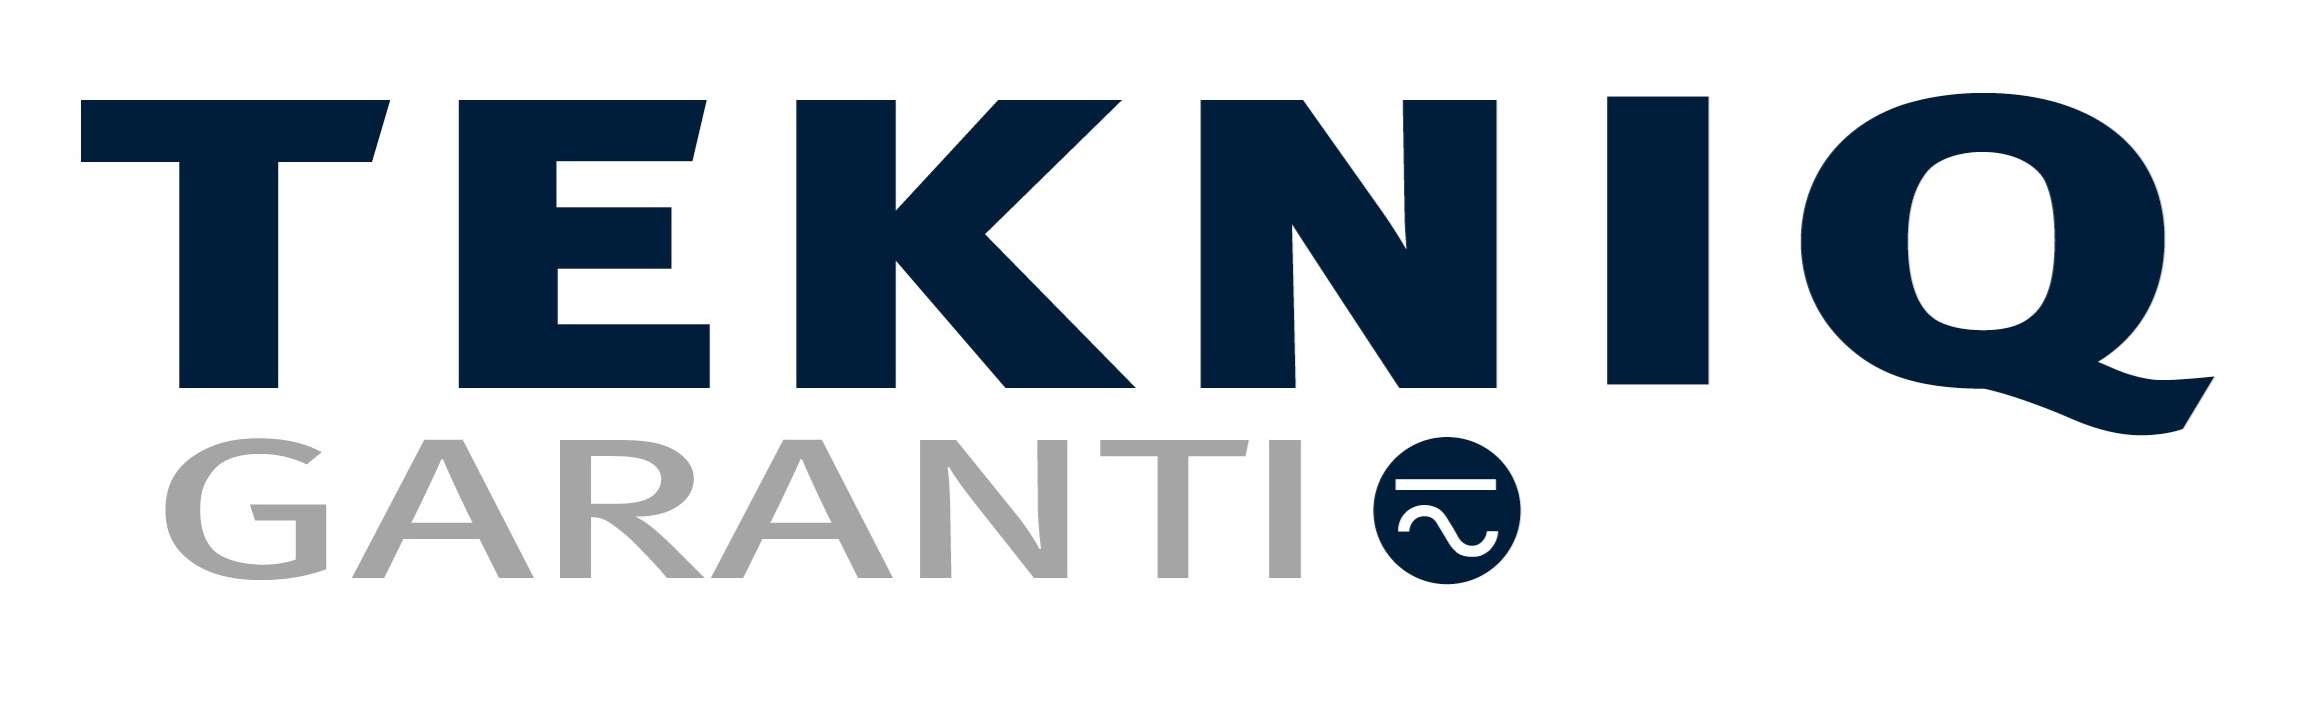 vvs-firma med medlemskab af Tekniq garanti med beliggenhed i Kastrup og kunder i Dragør, Tårnby og resten af Amager.